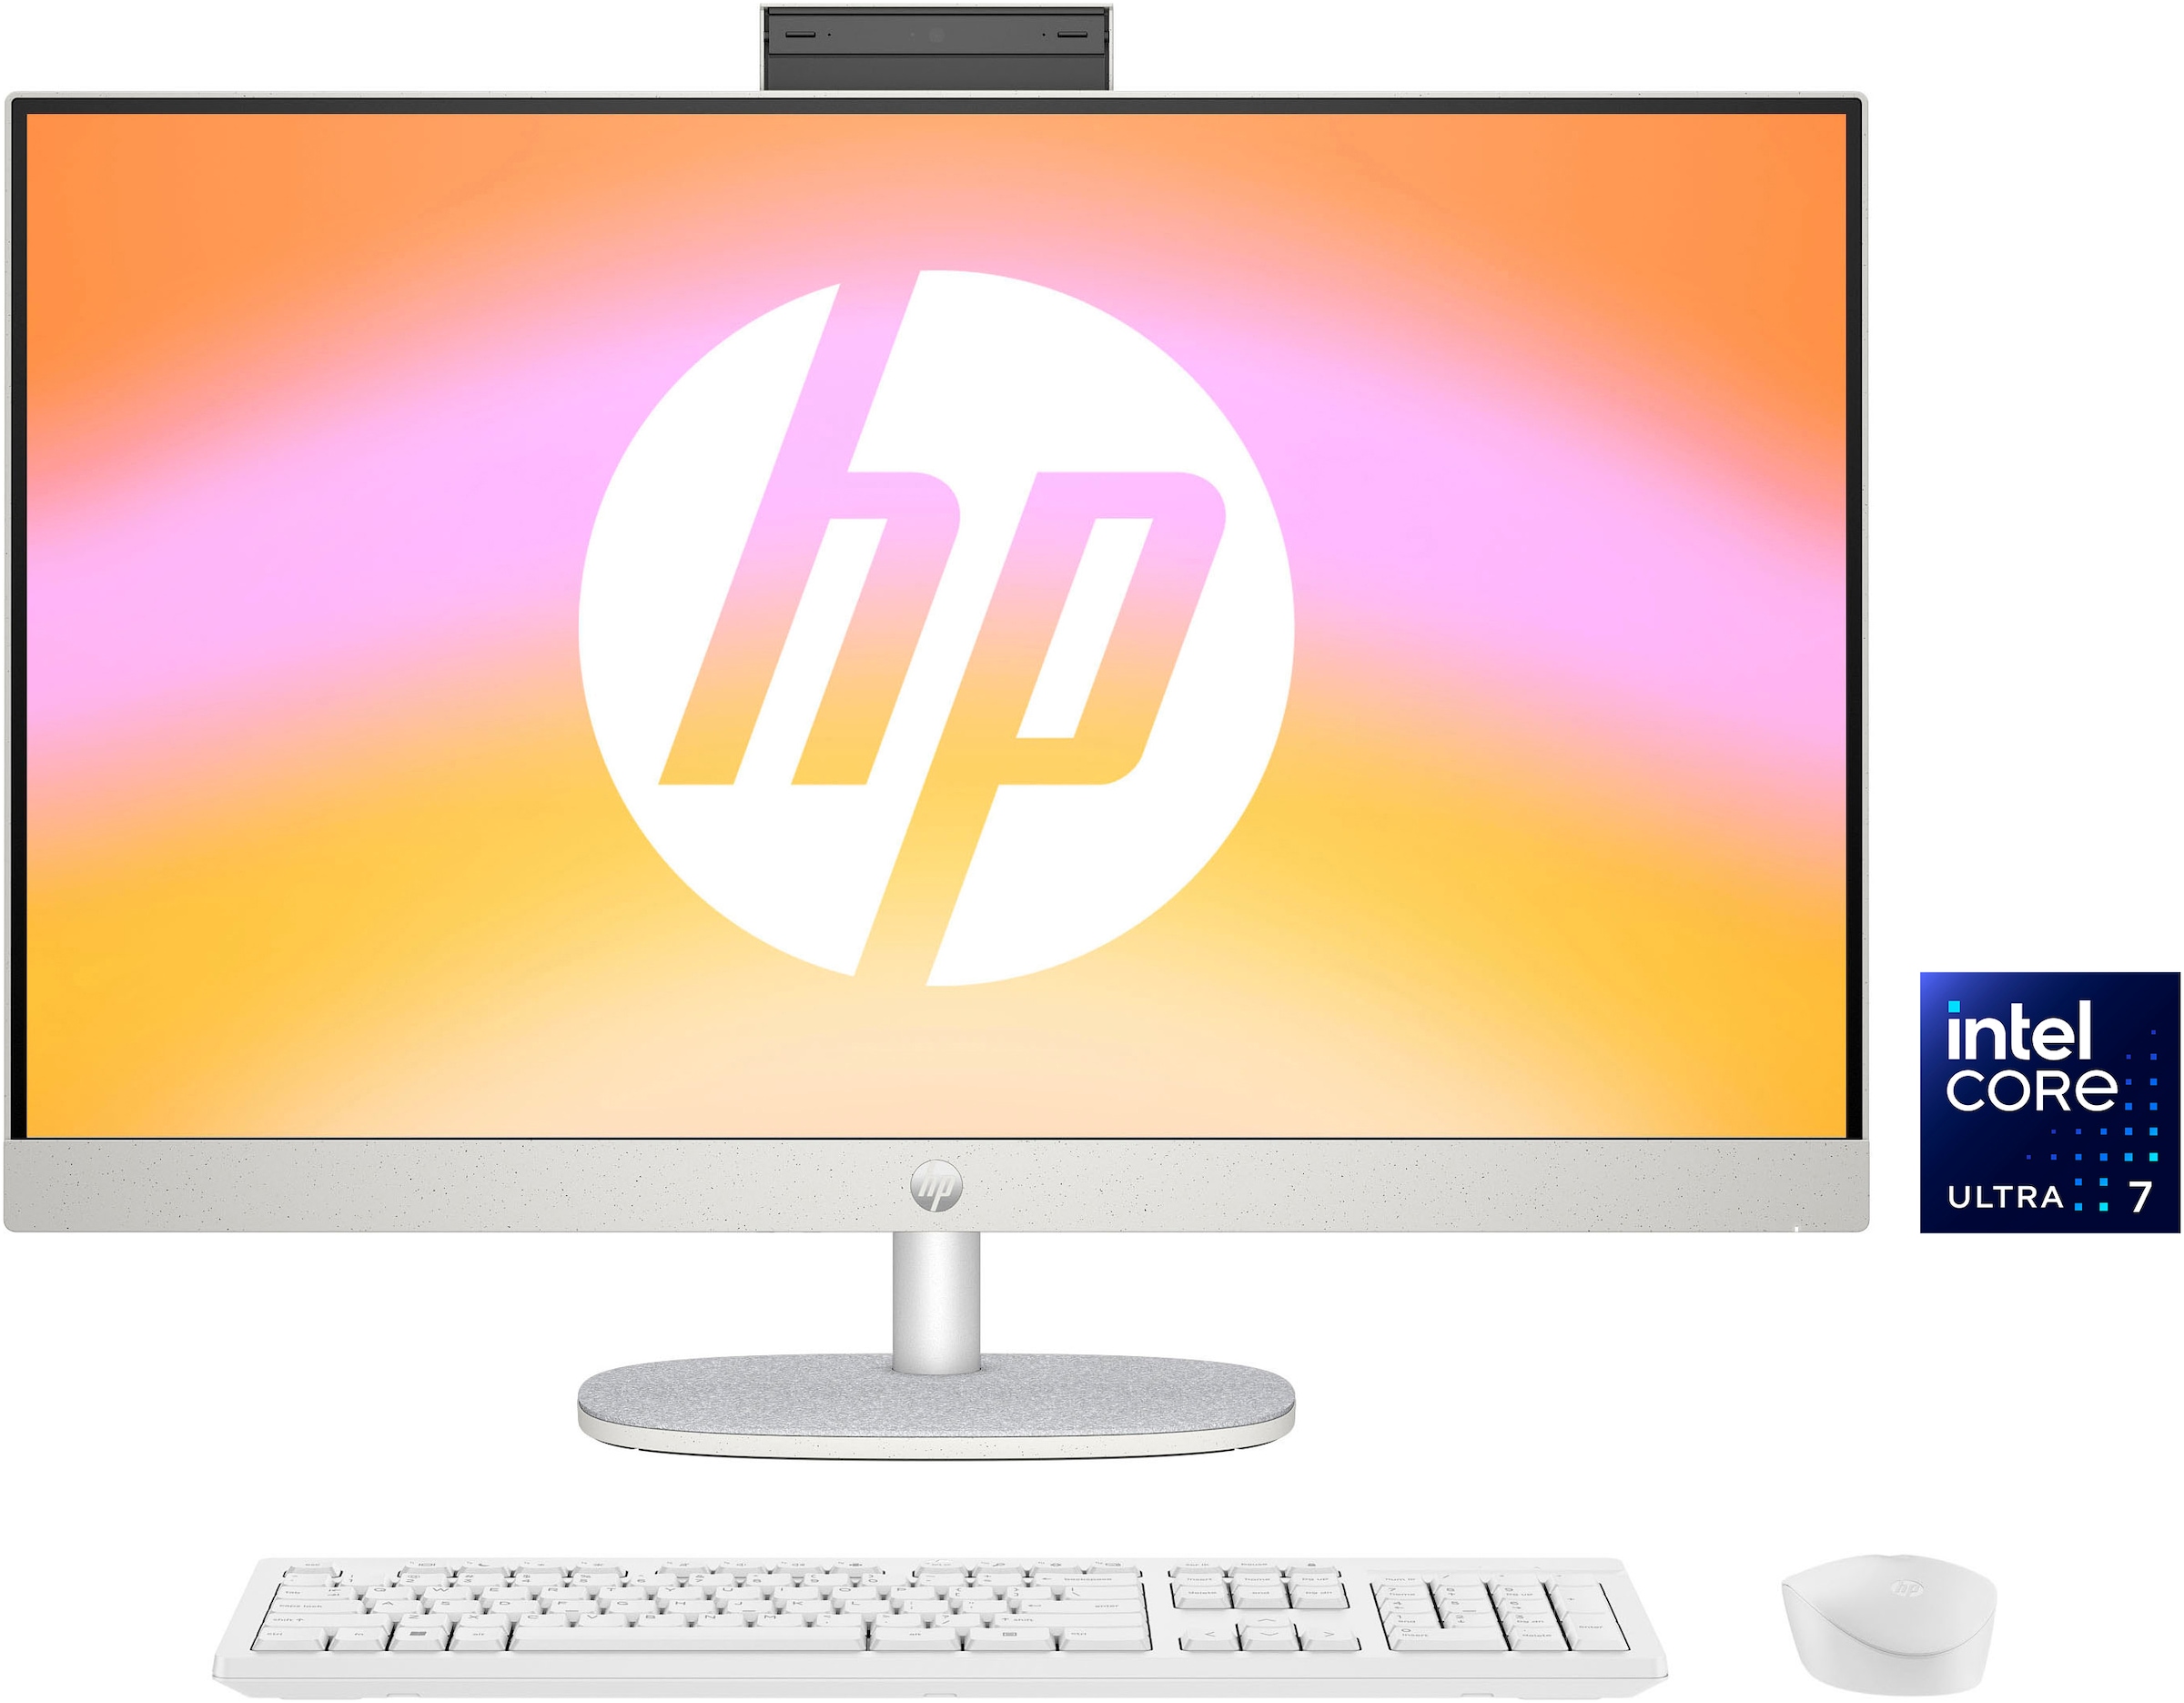 online HP möglich ▷ | BAUR All bestellen in One Ratenzahlung PC